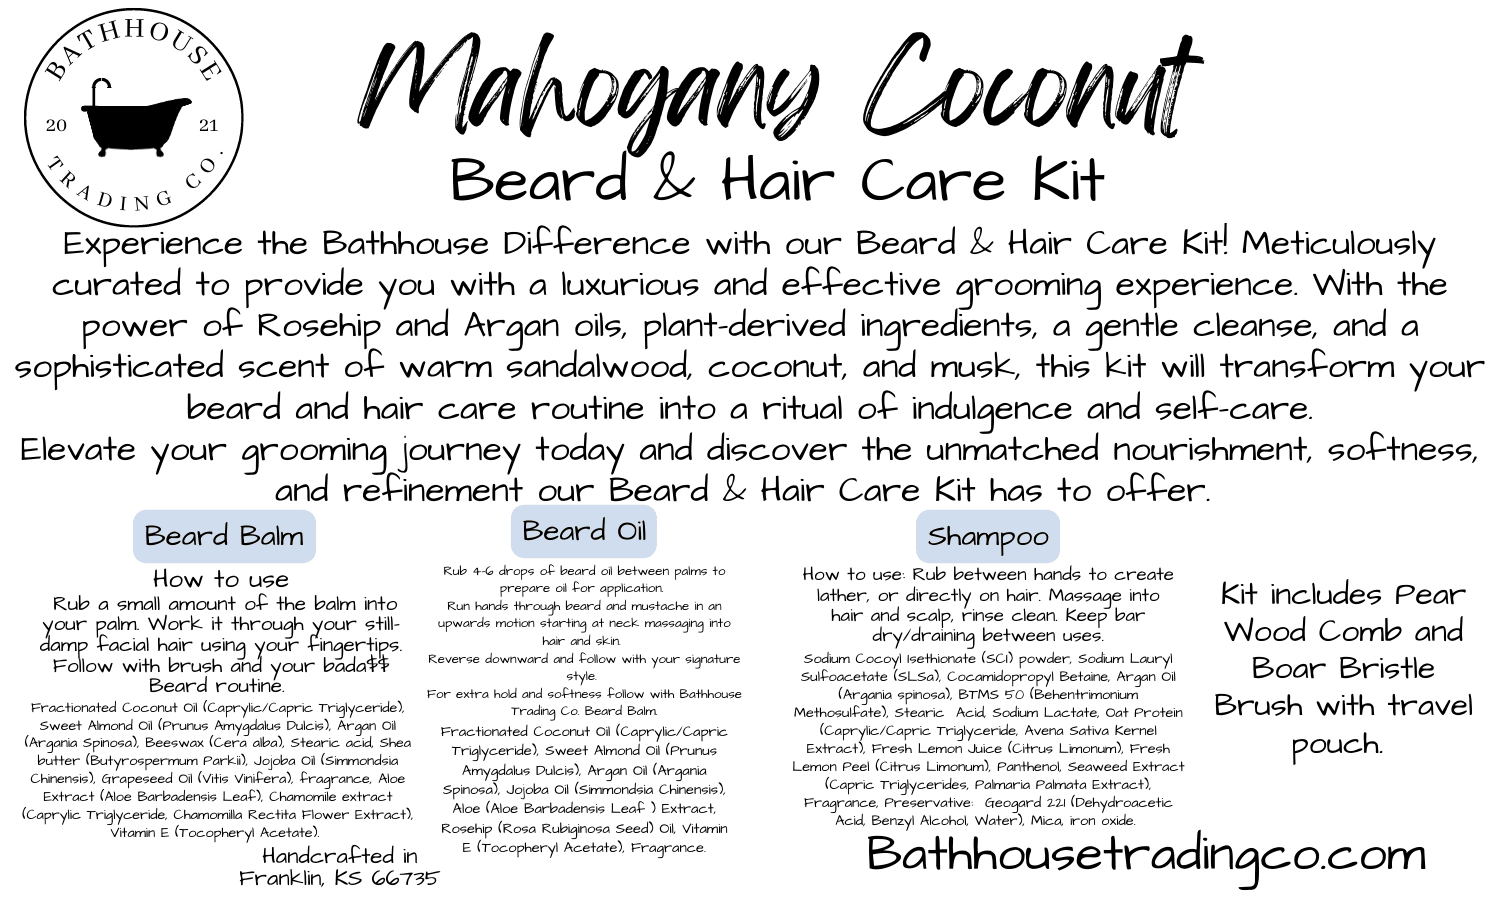 Beard & Hair Care Kit Mahogany Coconut - Bathhouse Trading Company